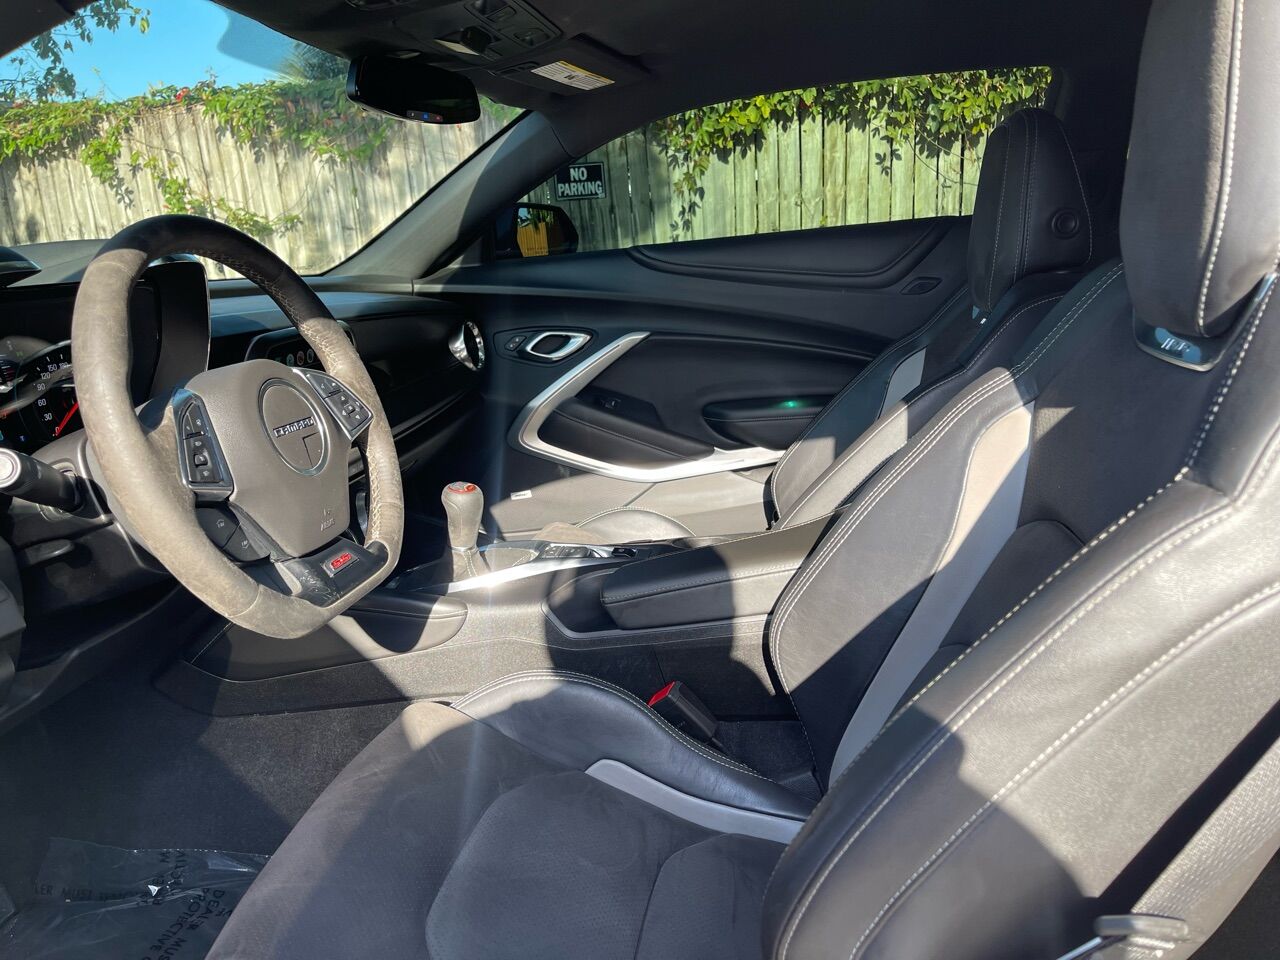 2018 Chevrolet Camaro Coupe - $27,300